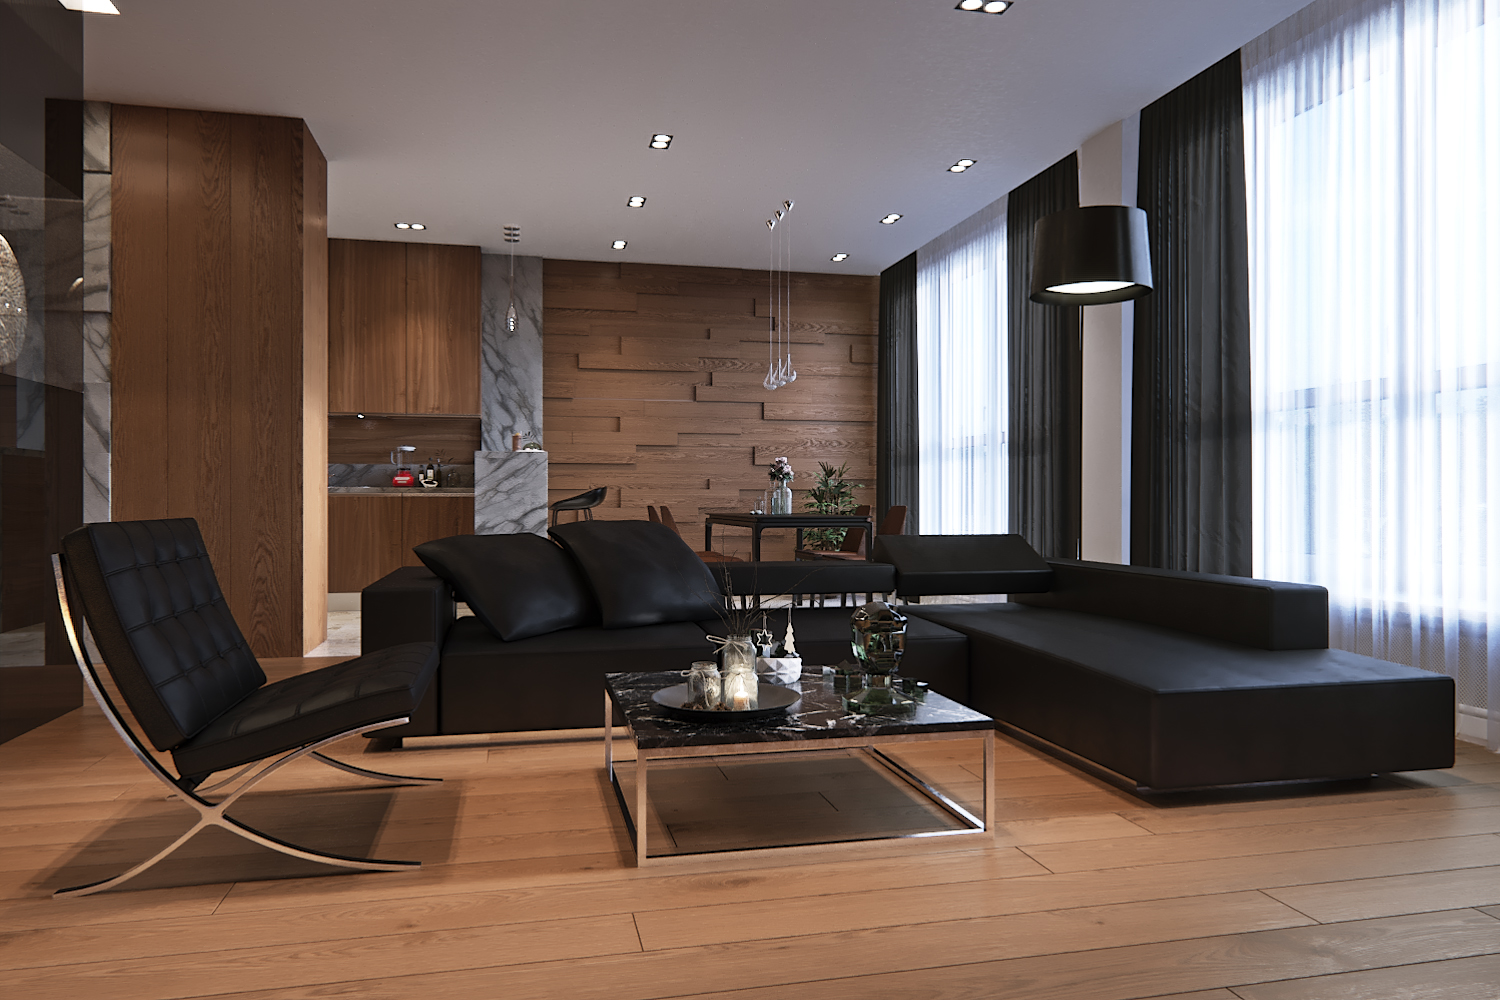  Living  room  in a minimalist style  Ronen Bekerman 3D 